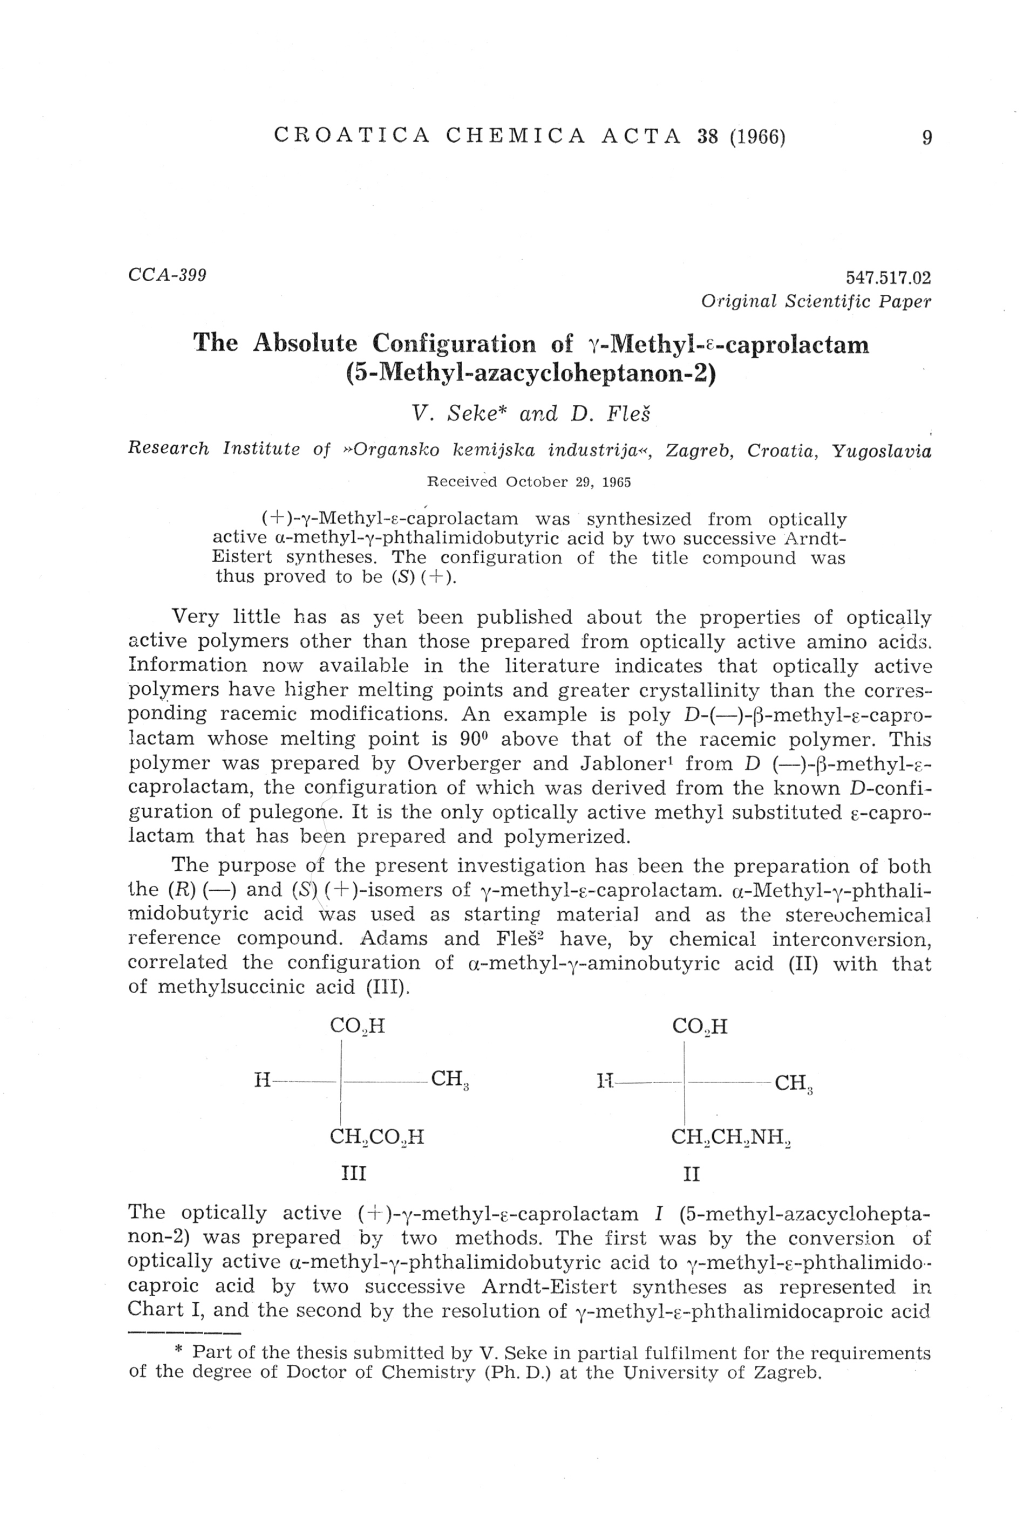 The Absolute Configuration of Y-Mcthyl-E-Caprolactam (5-Methyl-Azacycloheptanon-2) V